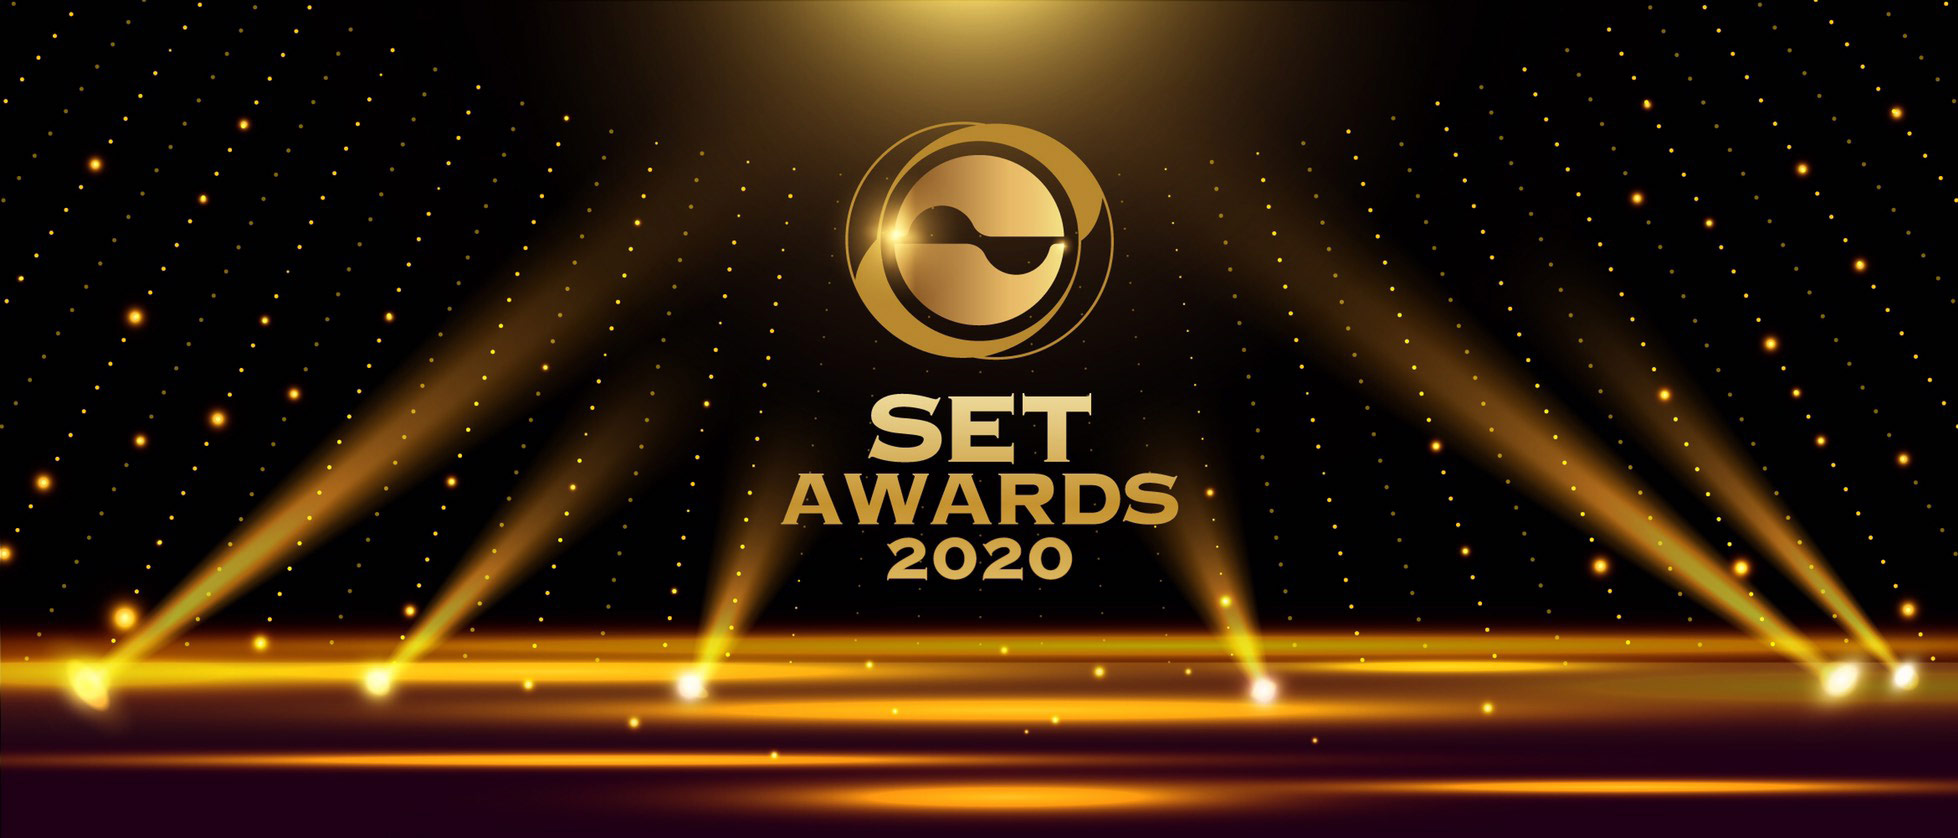 SET Awards 2020